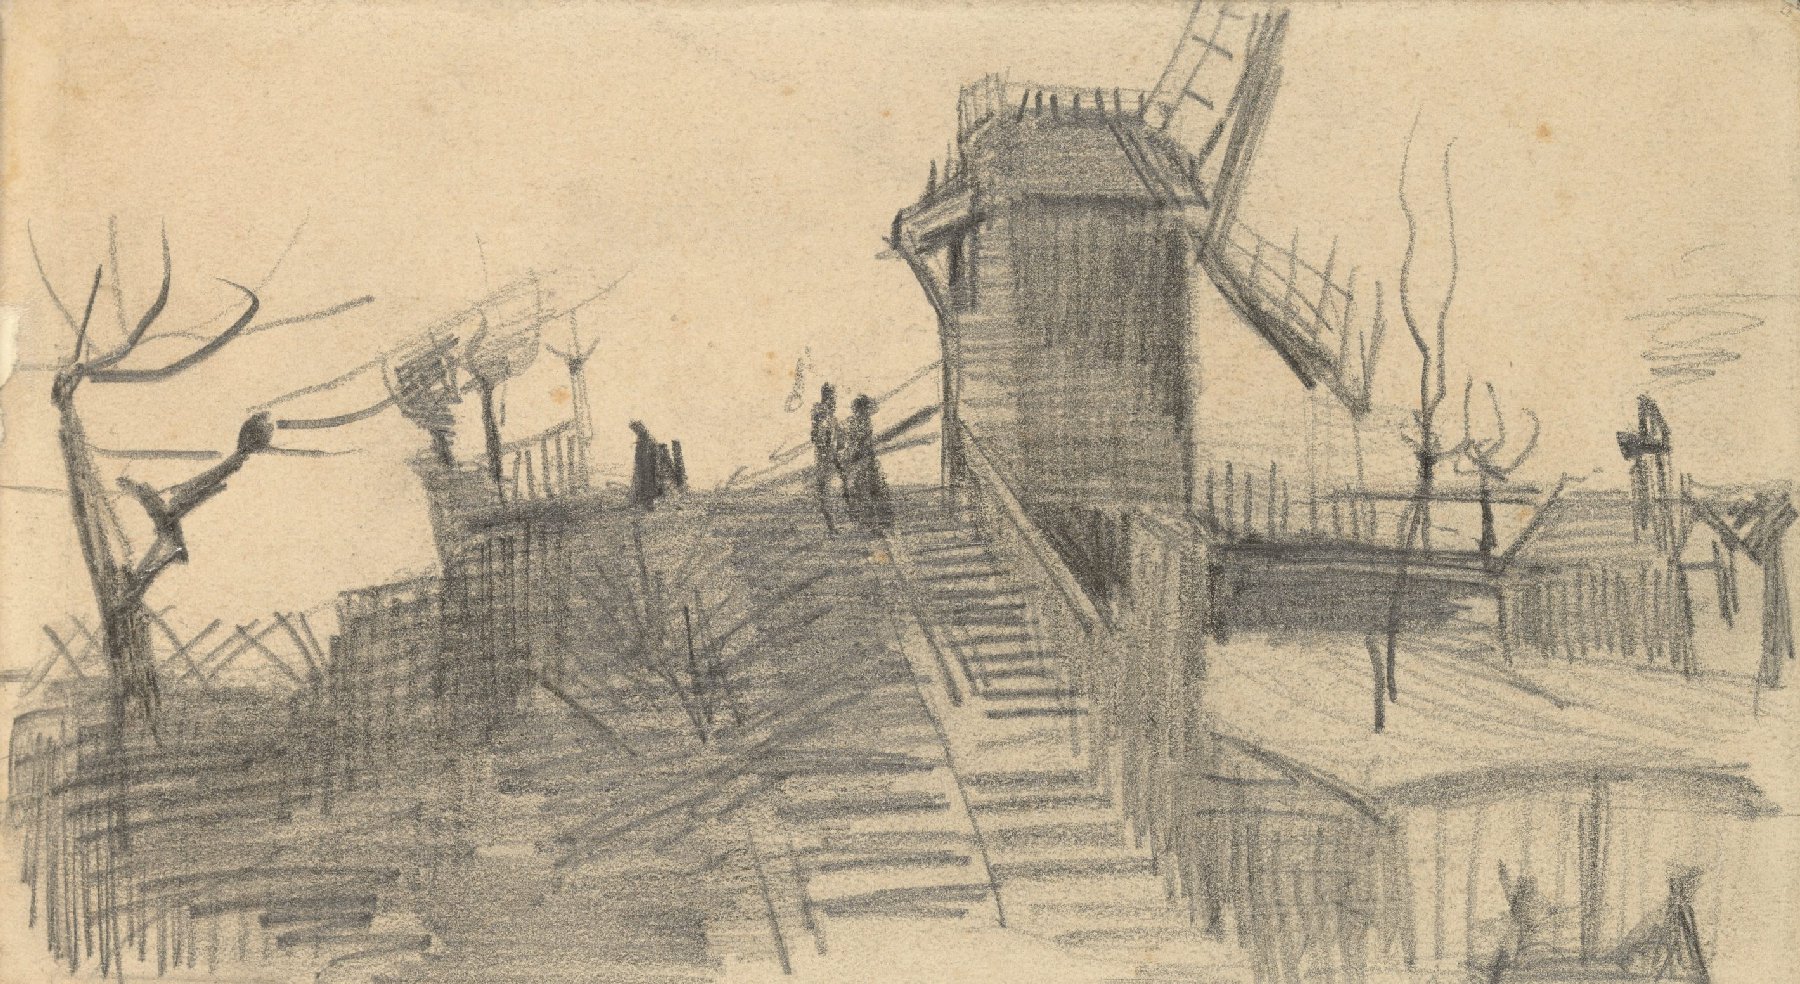 Moulin de Blute-Fin Vincent van Gogh (1853 - 1890), Parijs, maart-april 1886